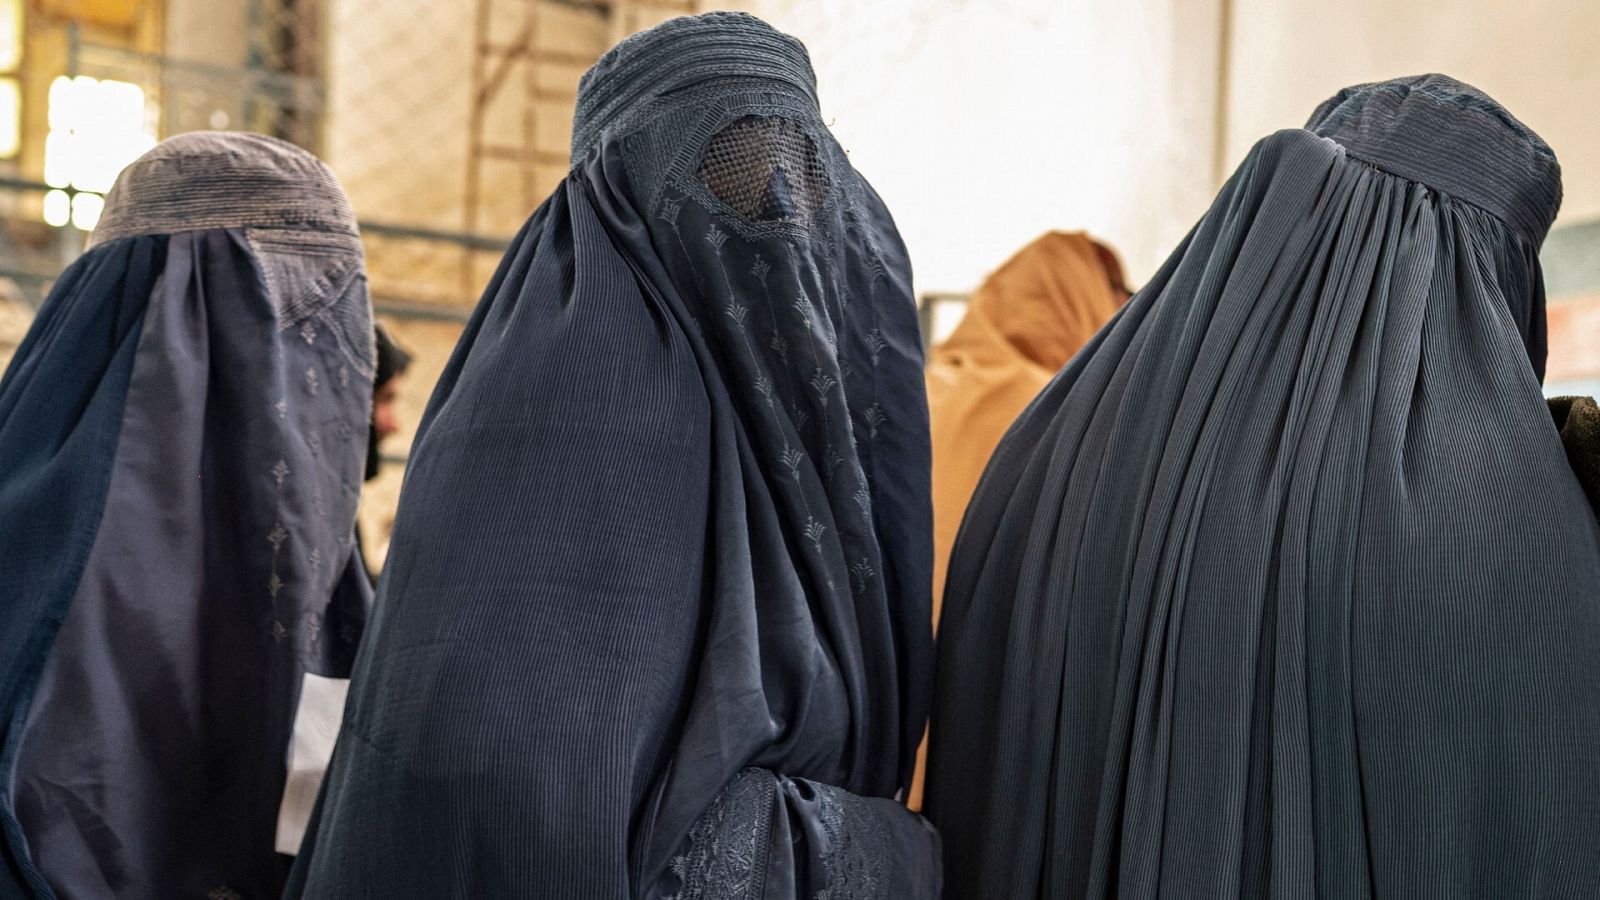 Mujeres afganas vestidas con burka hacen cola mientras esperan recibir ayuda alimentaria de una ONG en Kabul